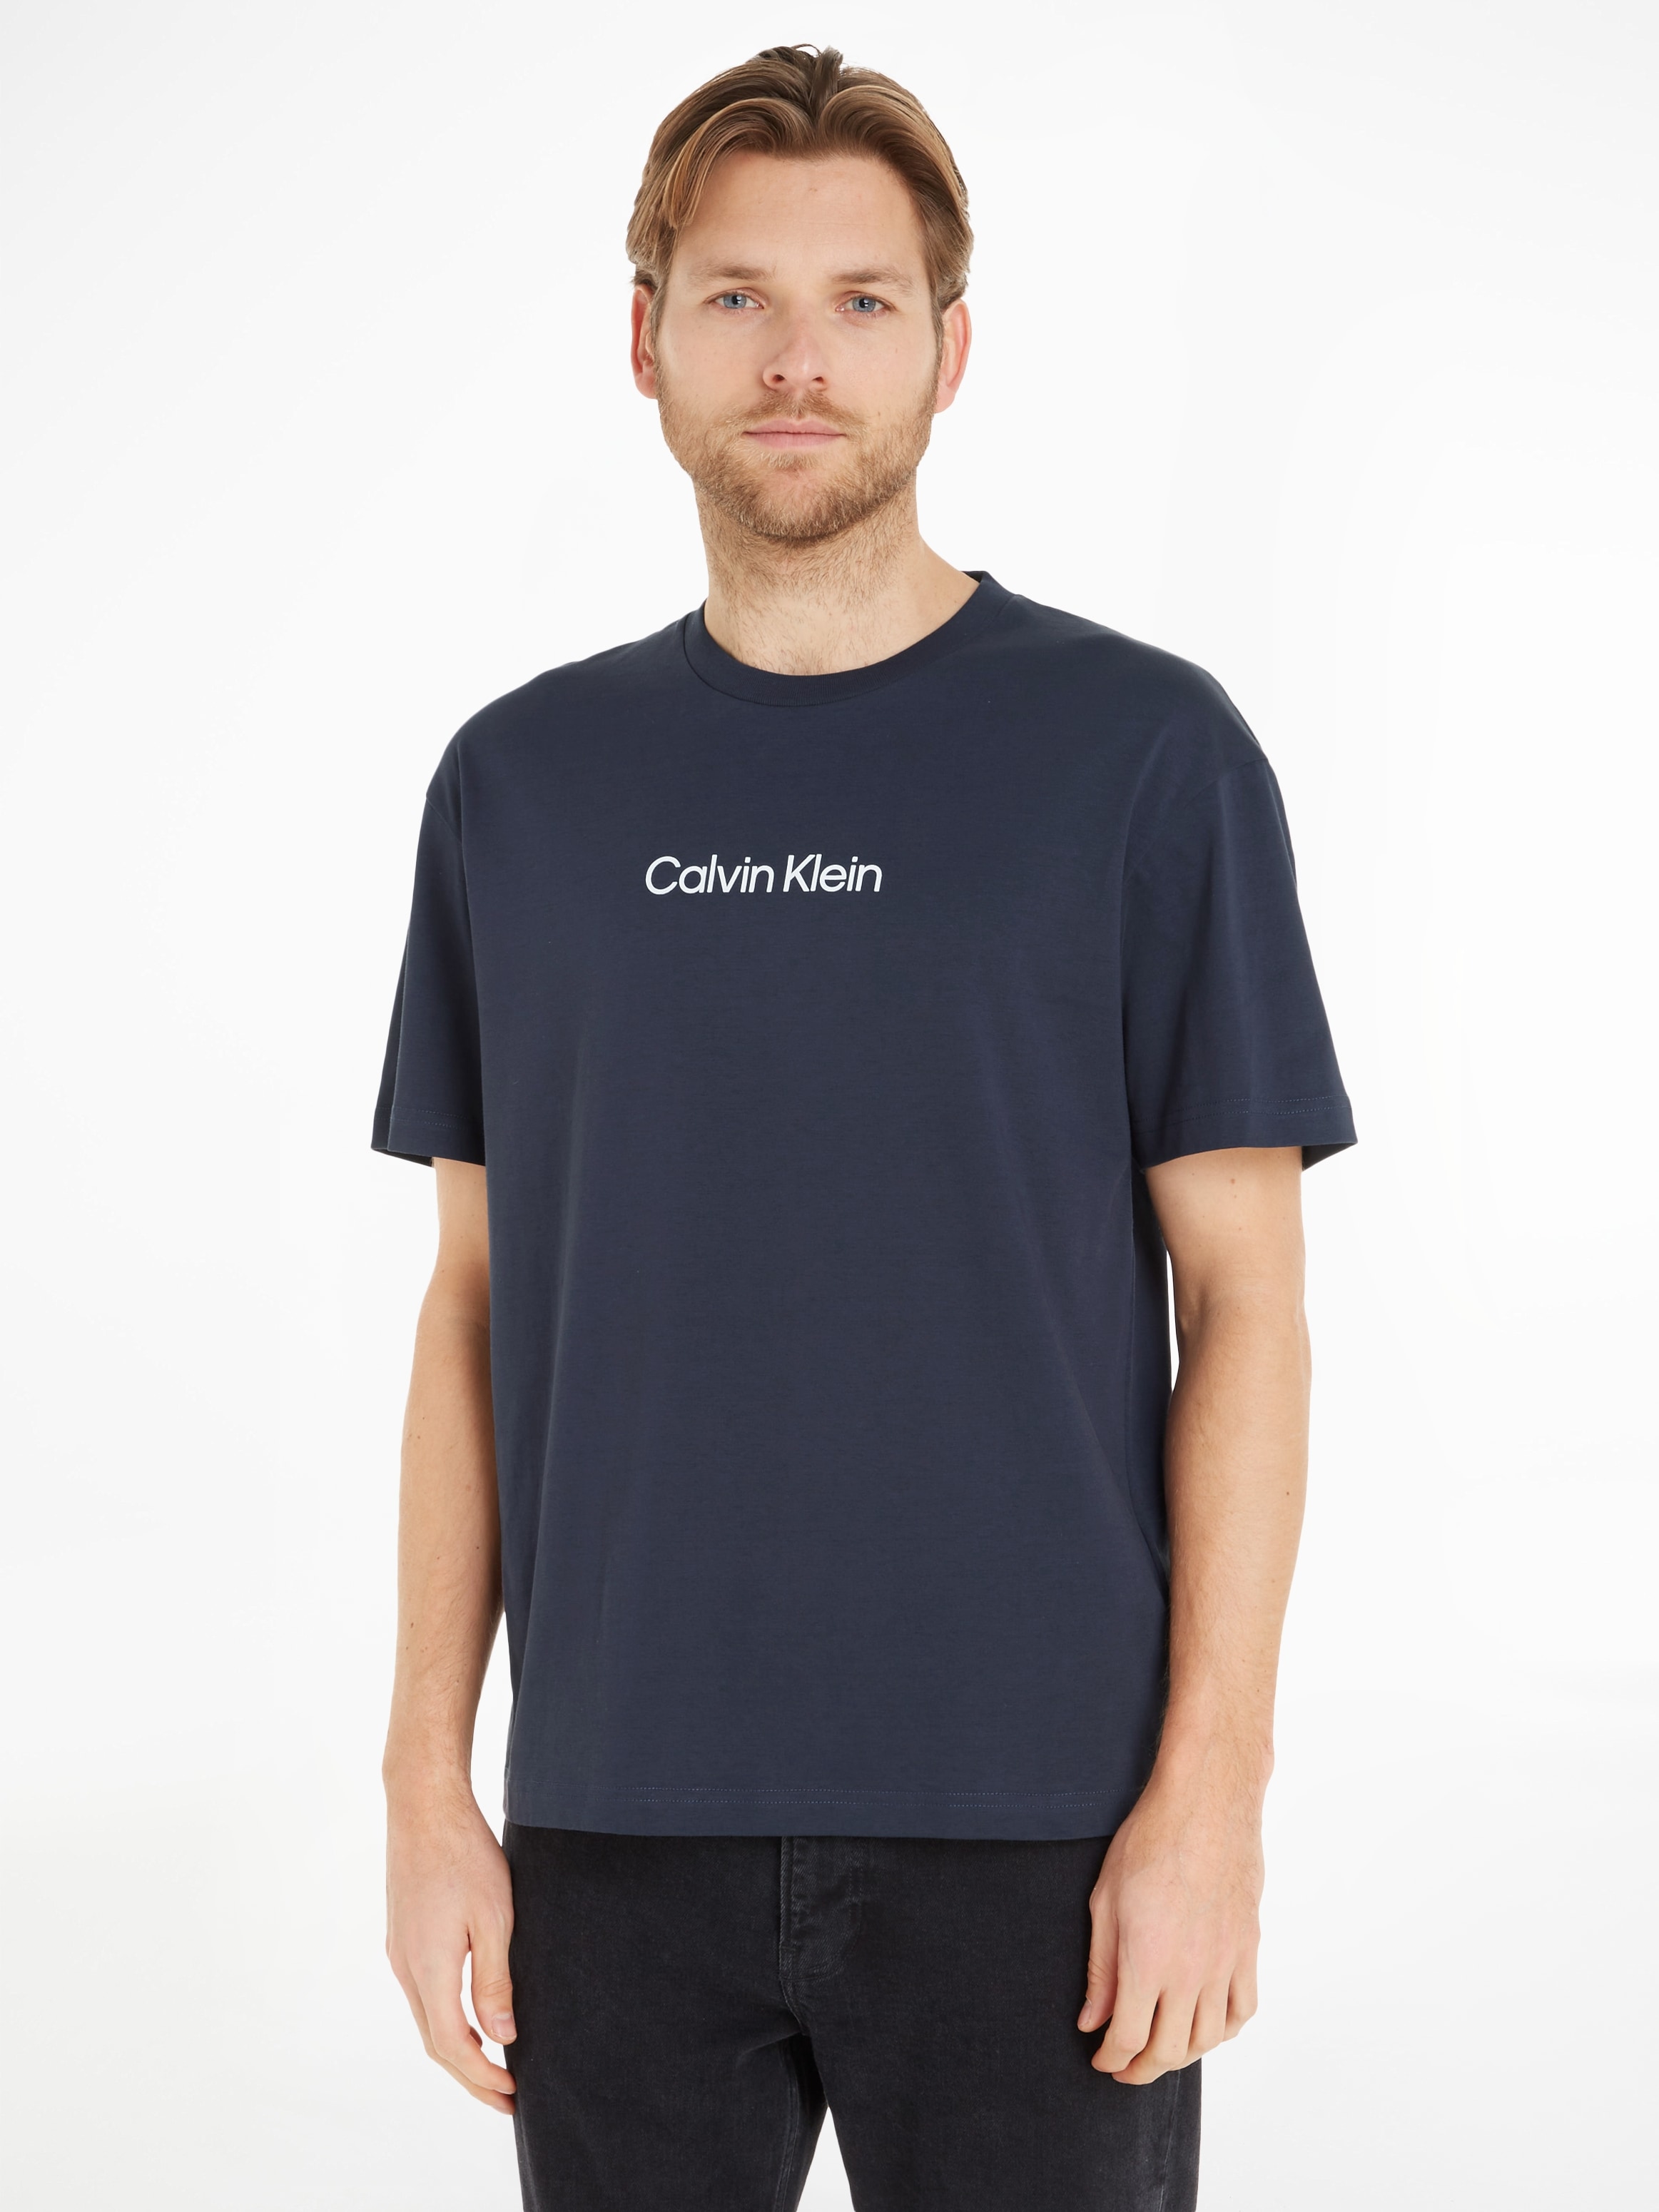 Calvin Klein T-Shirt OTTO COMFORT T-SHIRT«, online aufgedrucktem kaufen mit LOGO Markenlabel »HERO bei